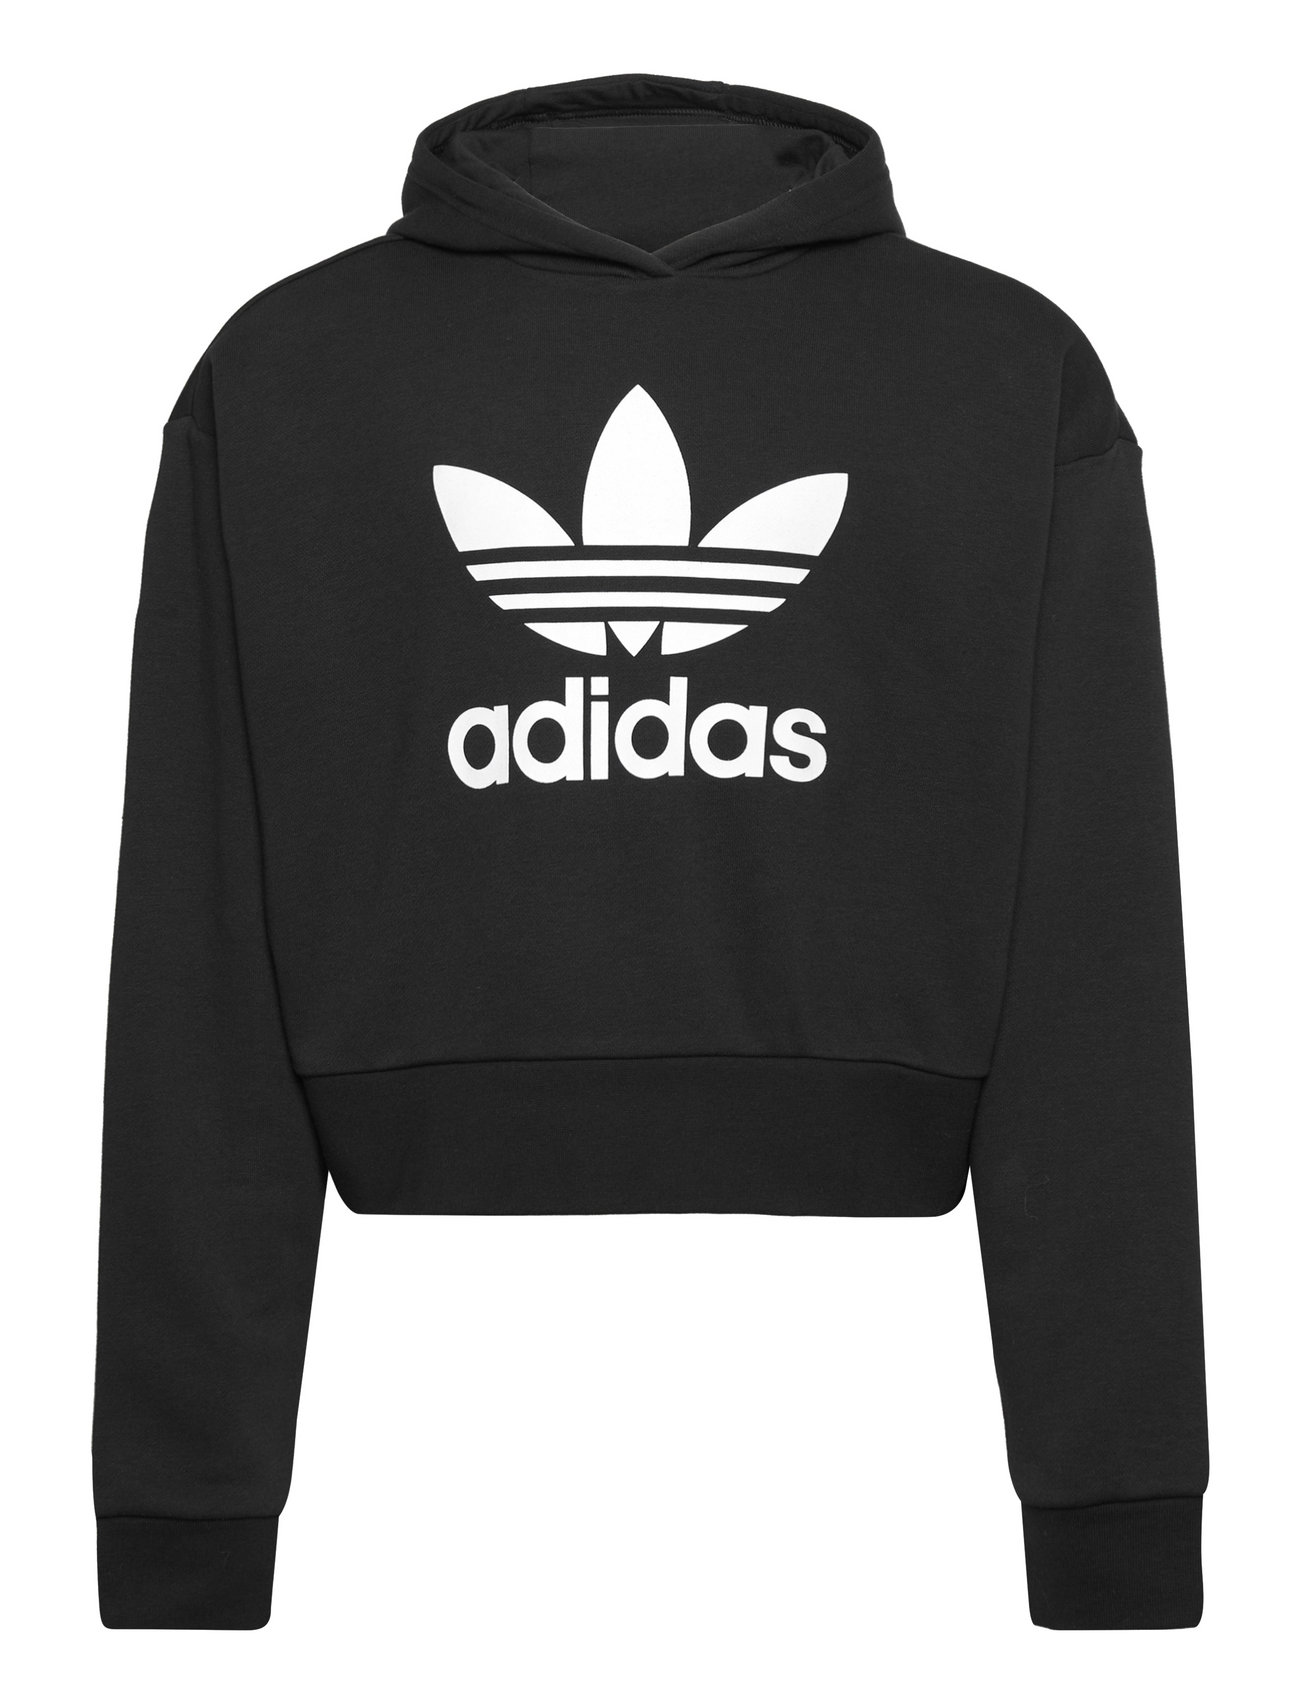 Cropped Hoodie Sport Sweat-shirts & Hoodies Hoodies Black Adidas Originals